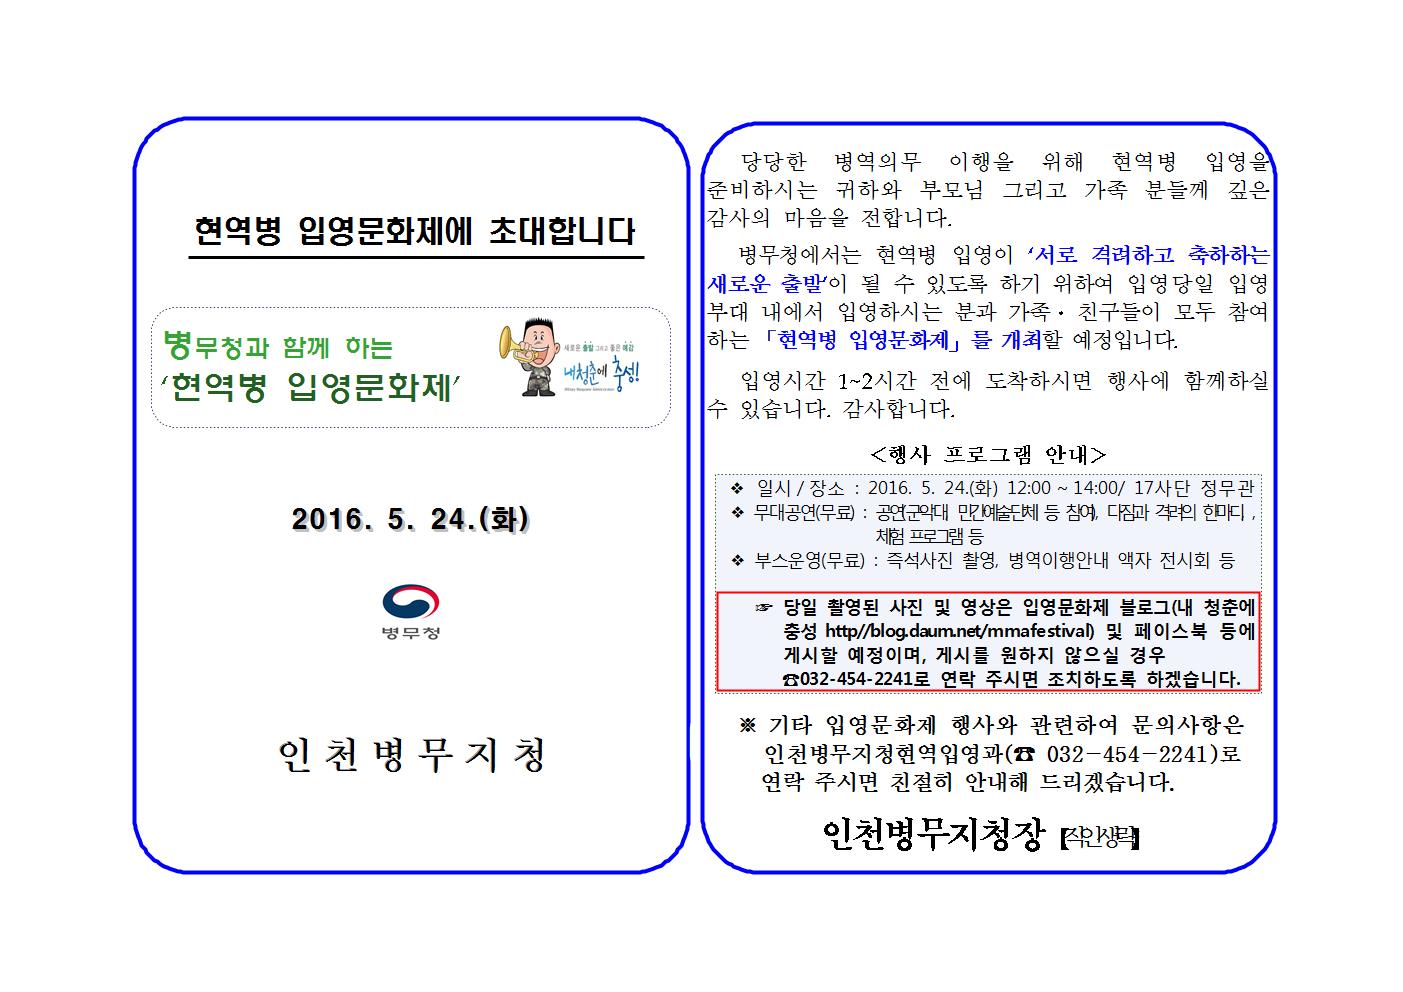 2016. 5. 24.(화) 육군 제17사단 현역병 입영문화제에 초대합니다.